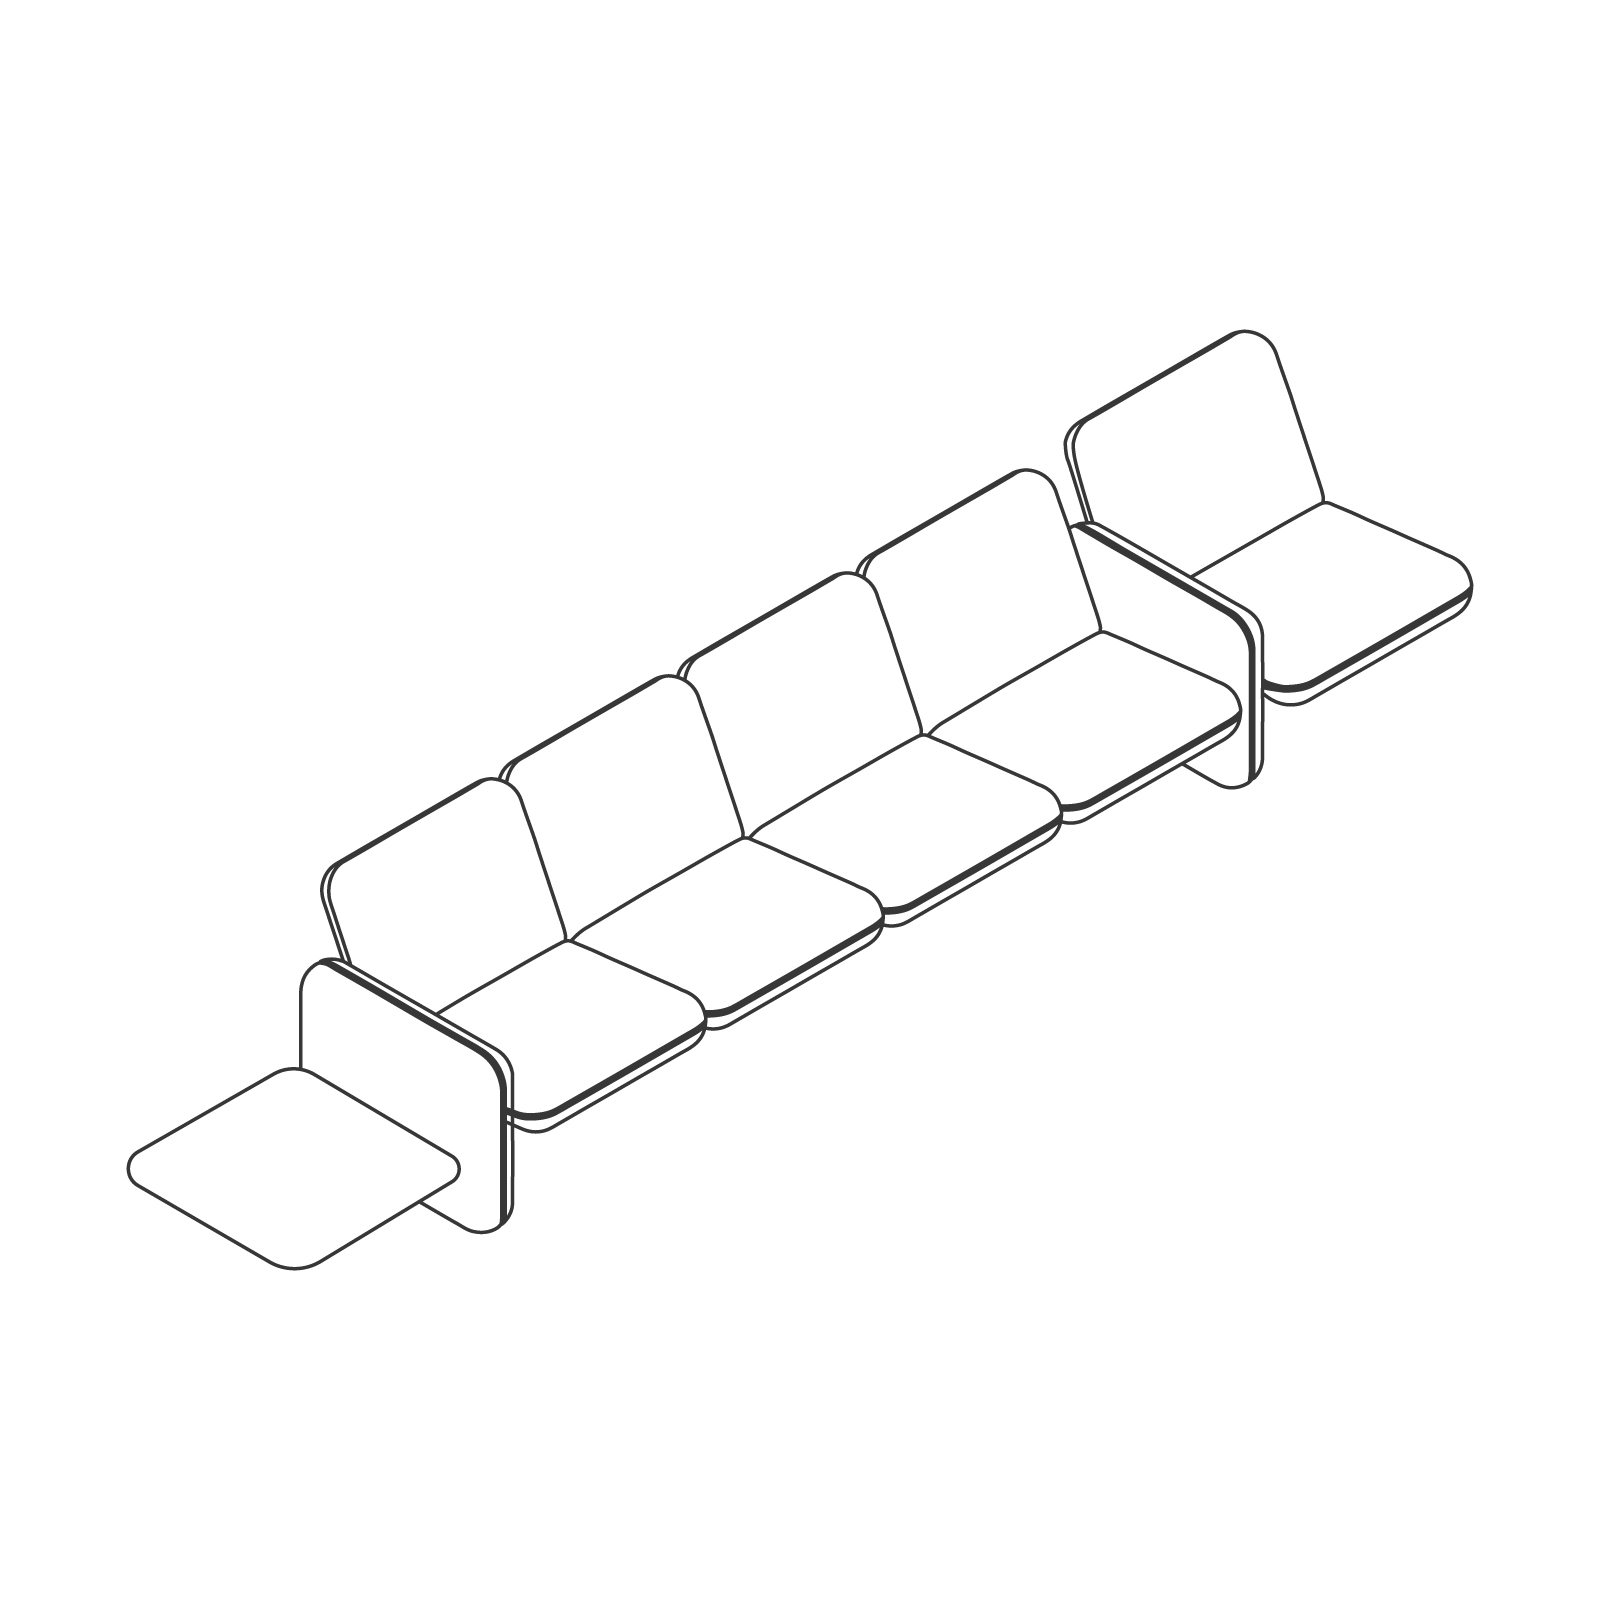 Uno schizzo - Gruppo di divani modulari Wilkes - 5 posti a sinistra - Tavolo a destra